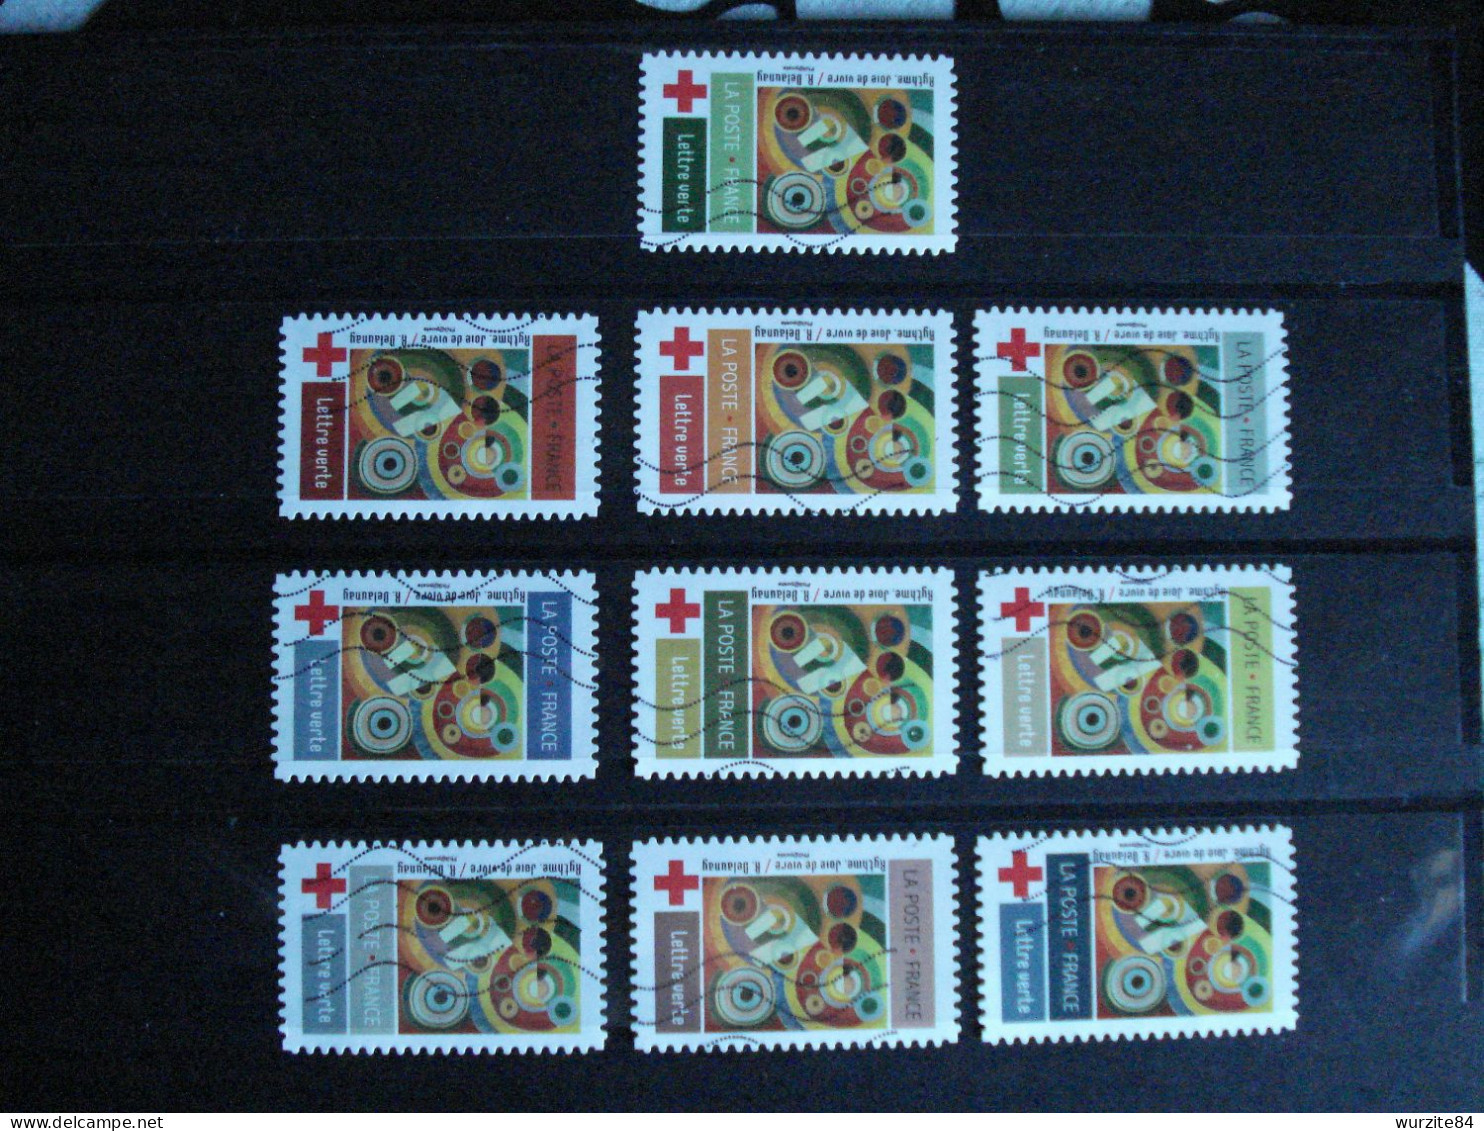 1863 à 1872 Série Croix Rouge Complète Et Oblitérée  Année 2020 ***** - Used Stamps